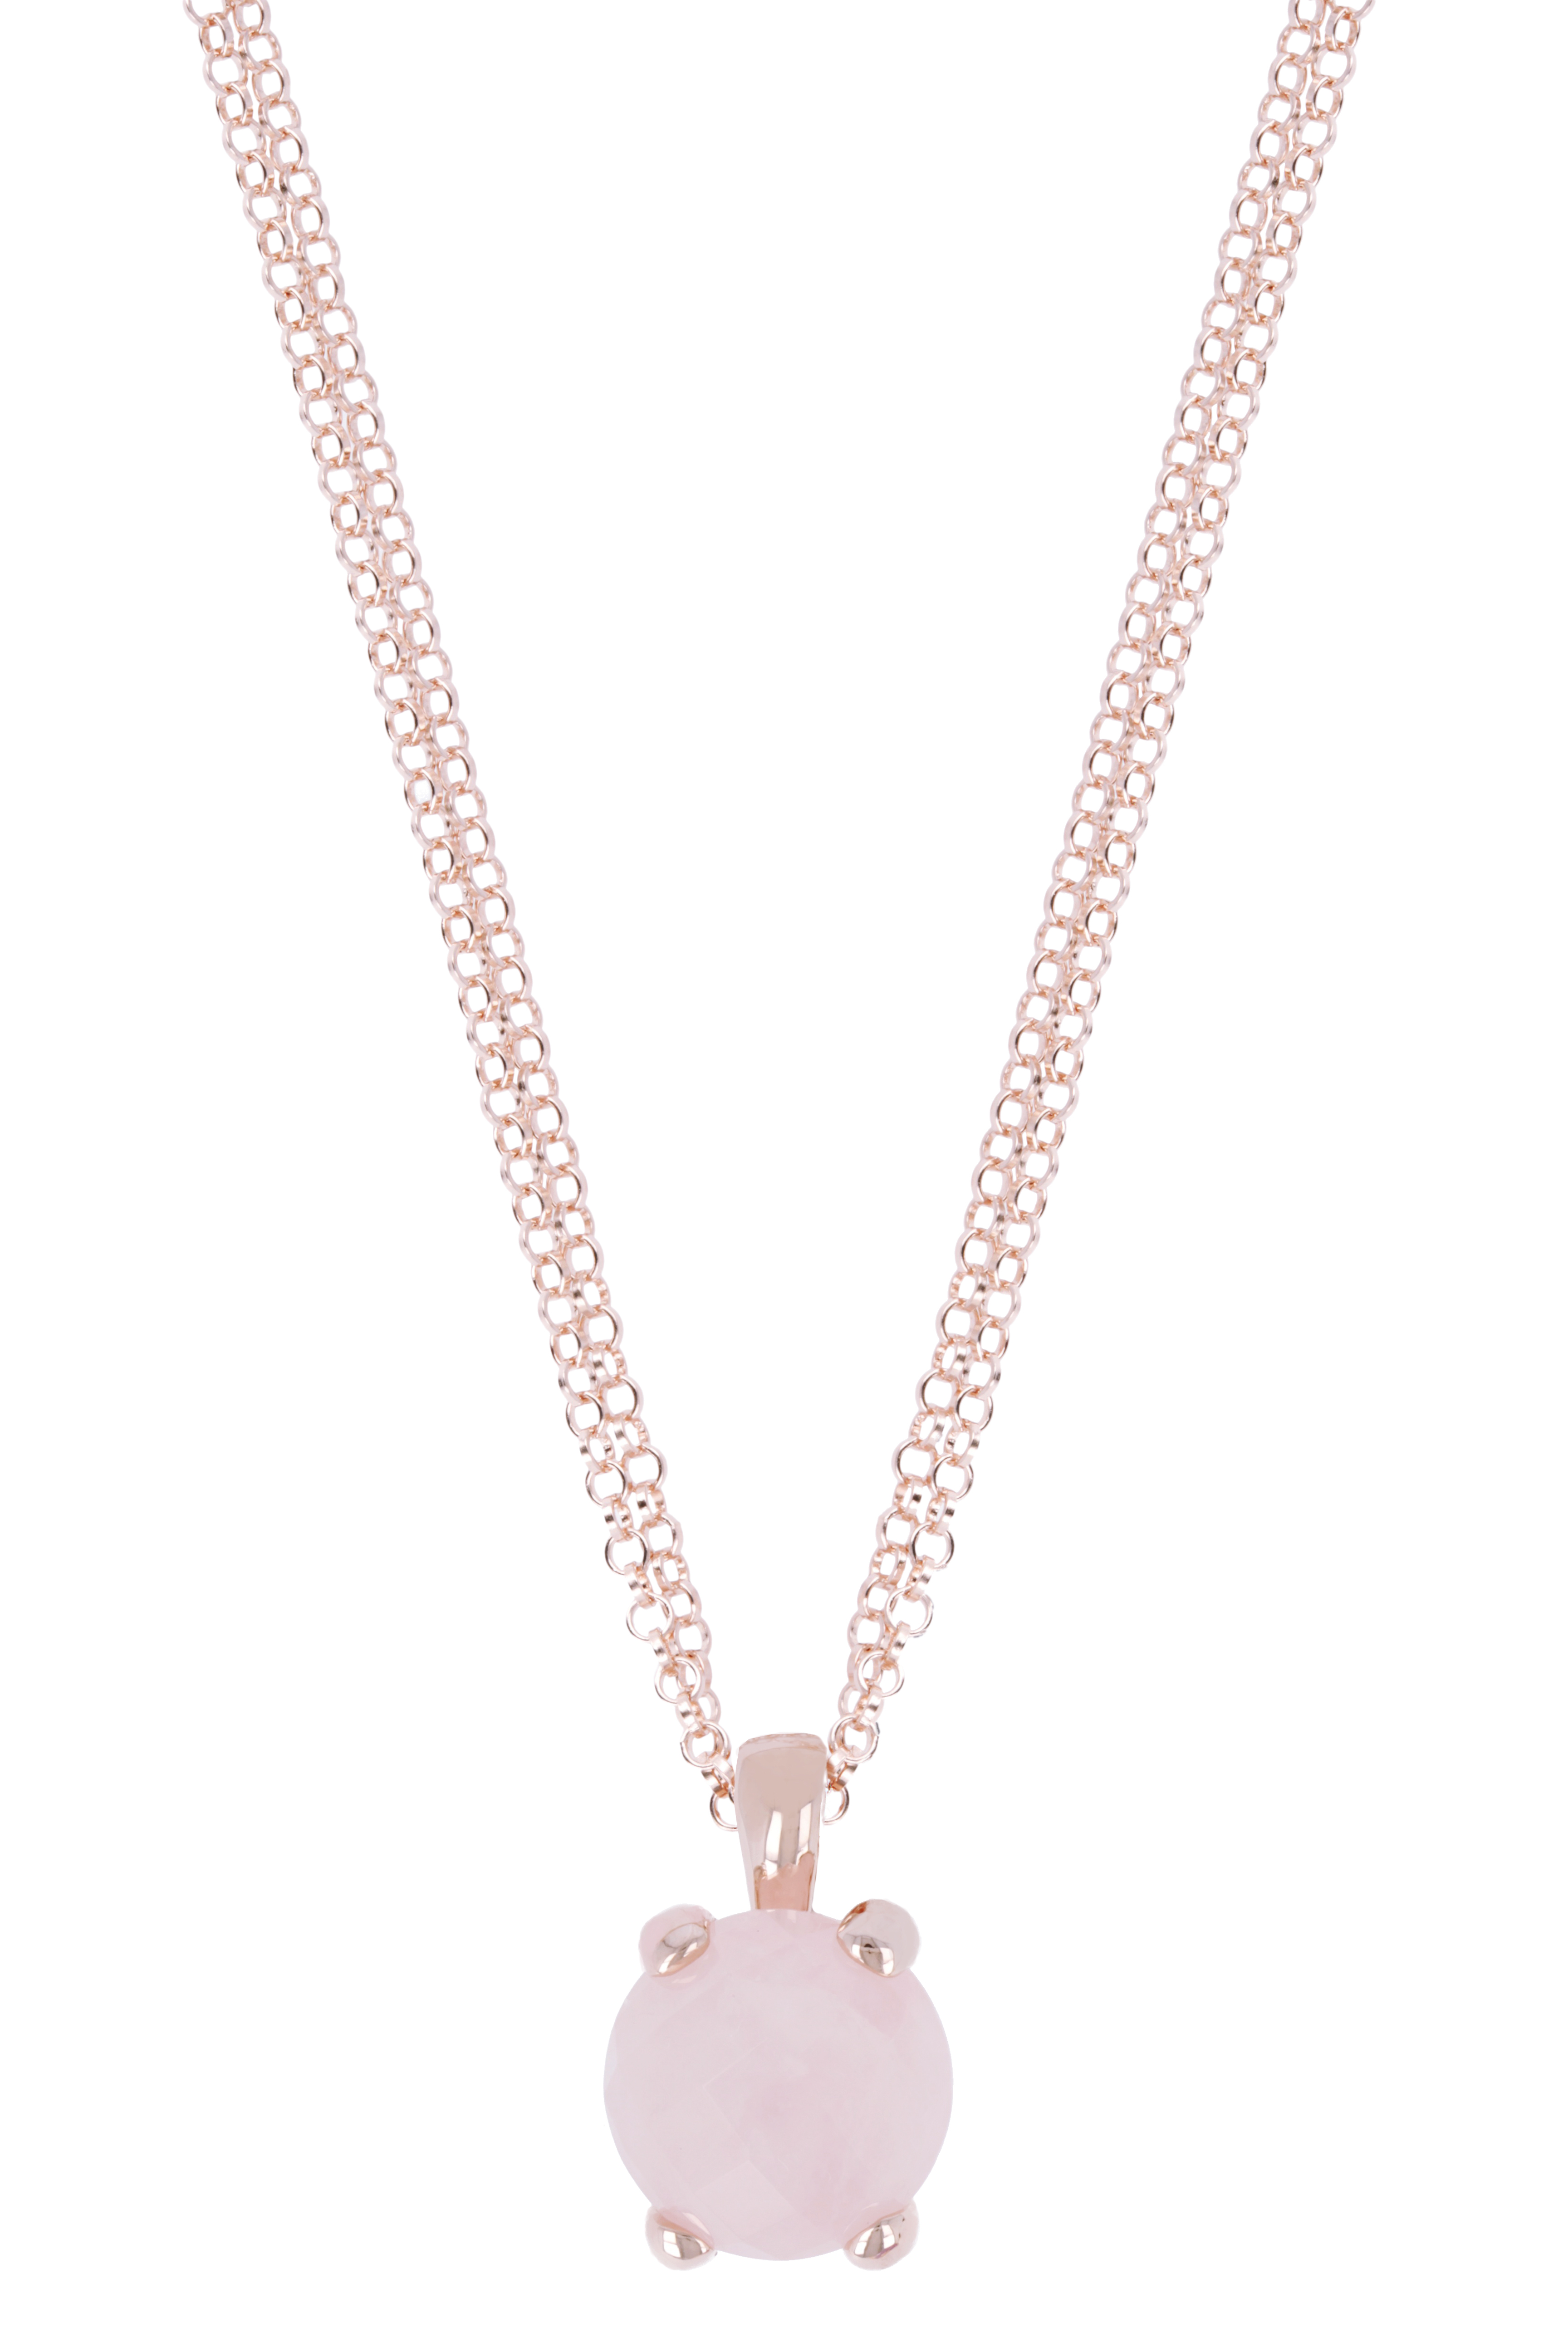 Rosé collier met rozenkwarts hanger WSBZ00280